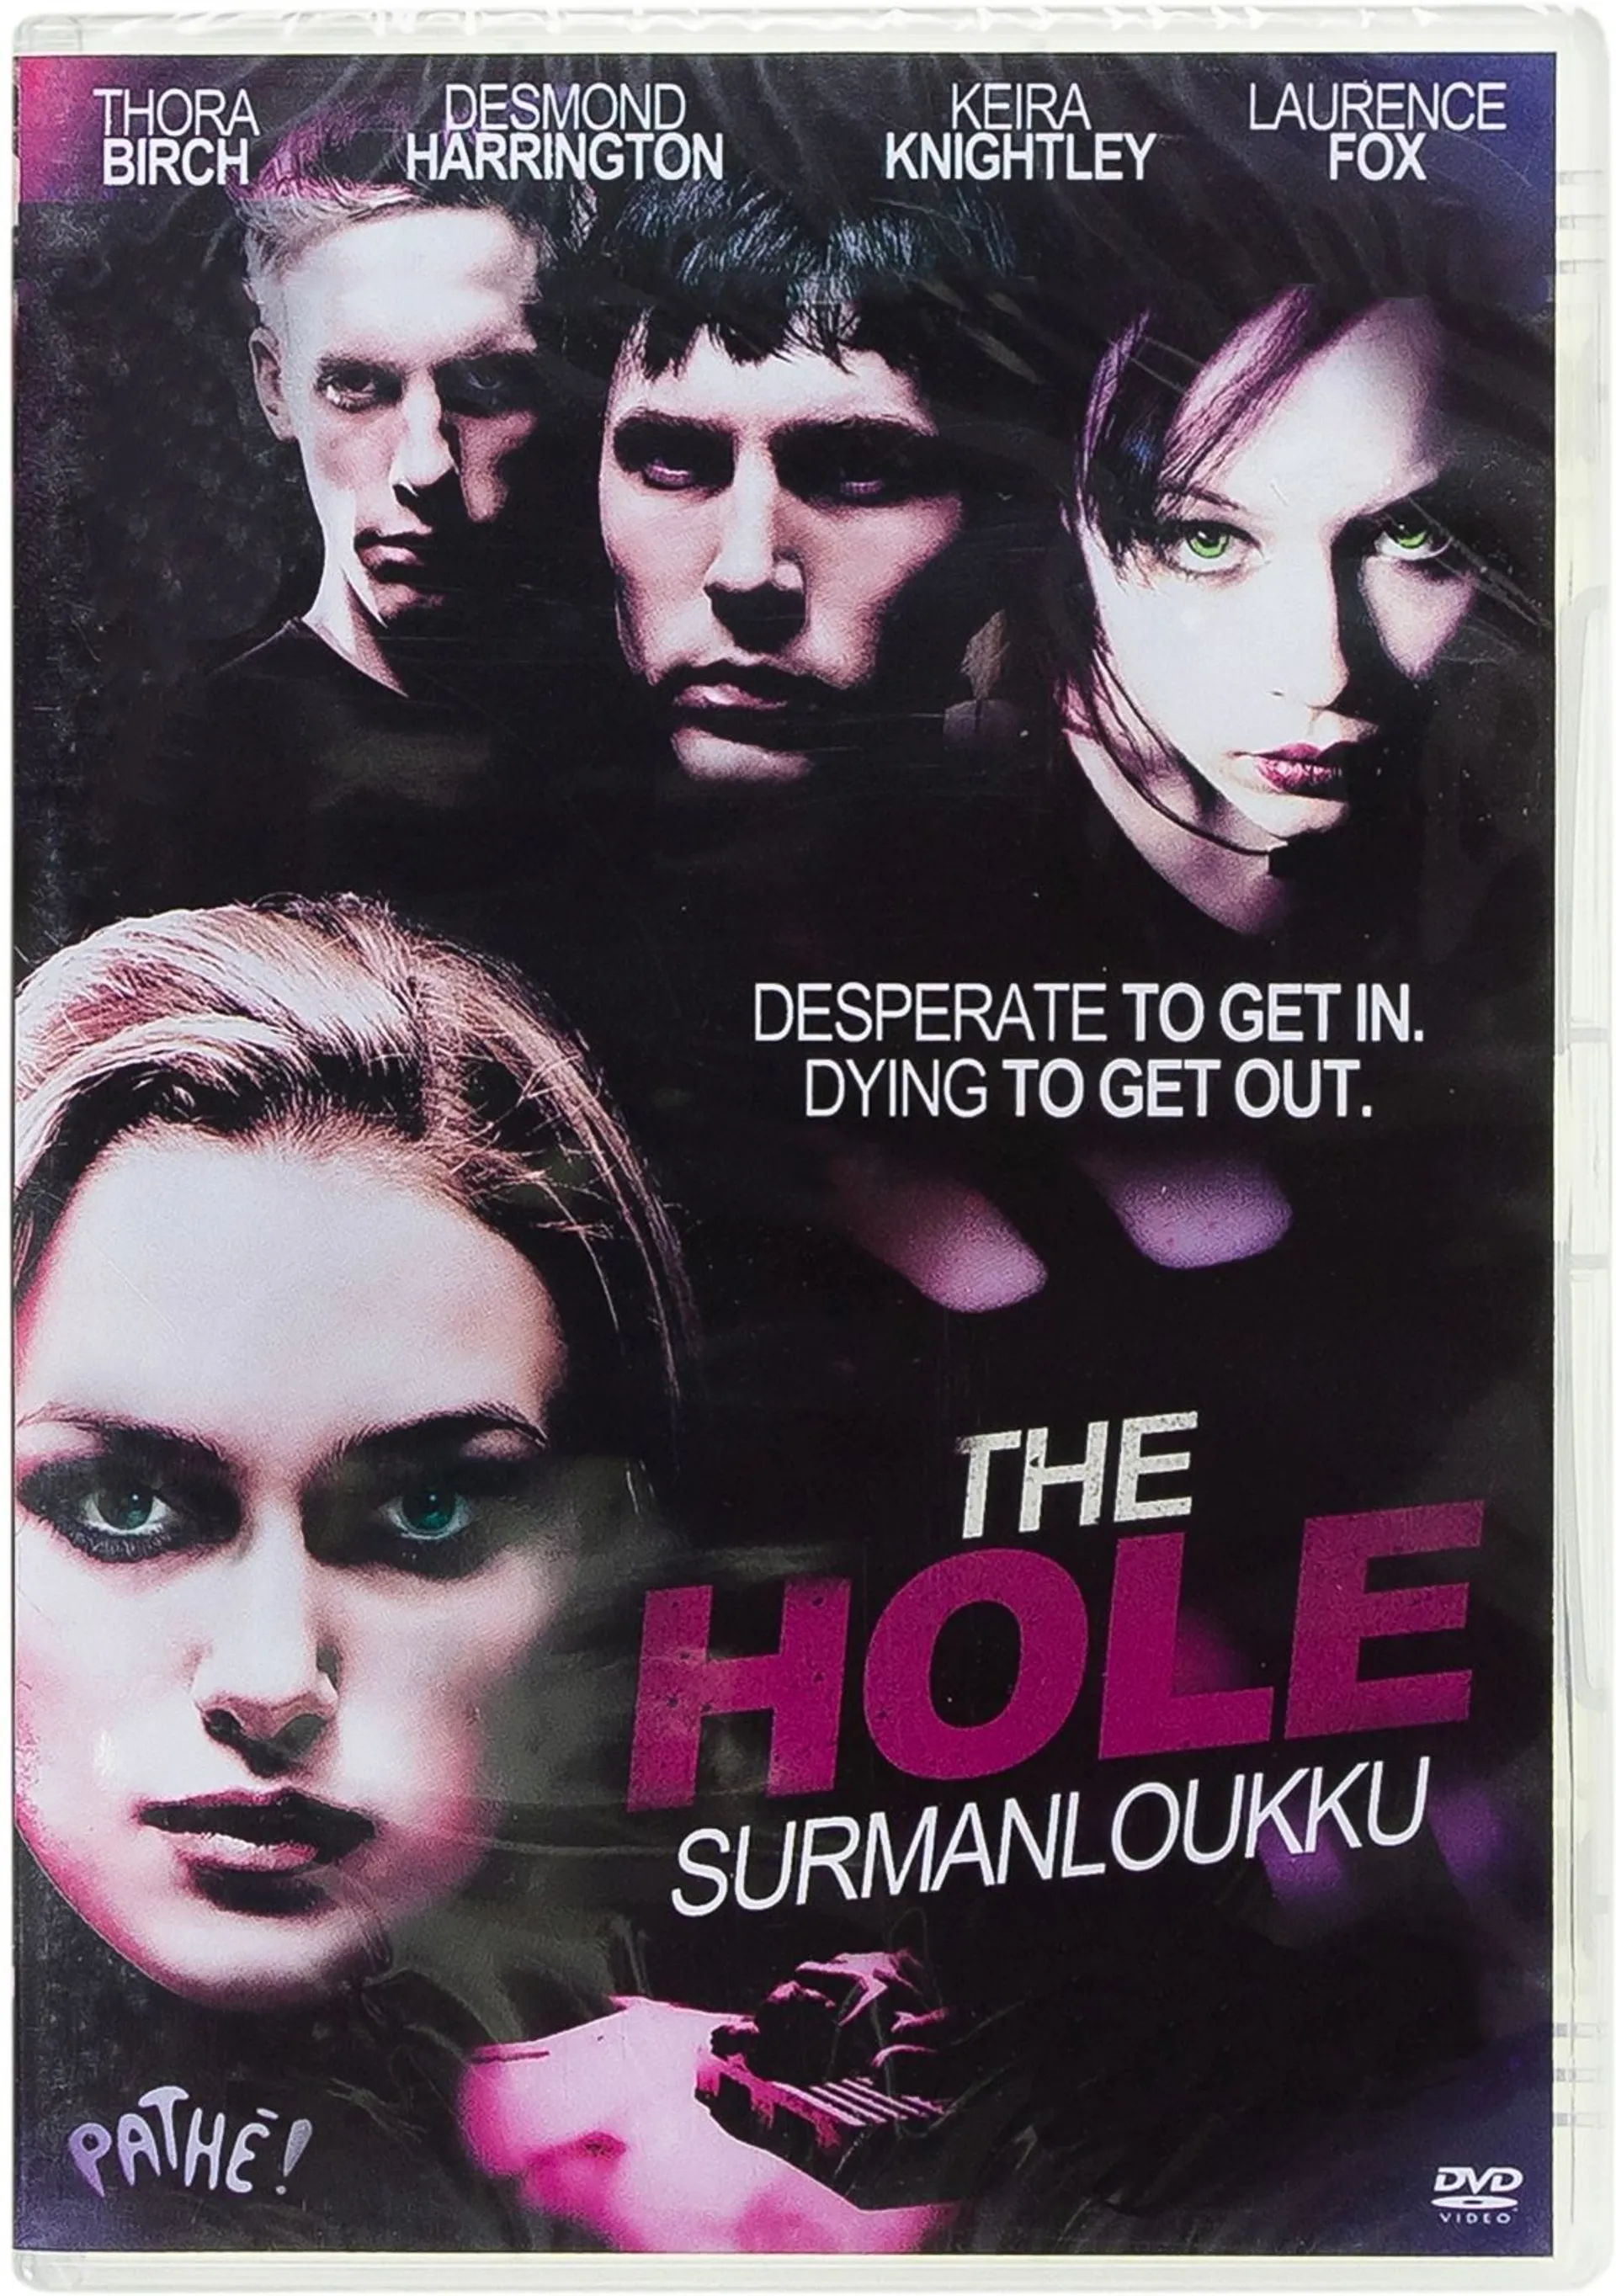 The Hole - Surmanloukku DVD